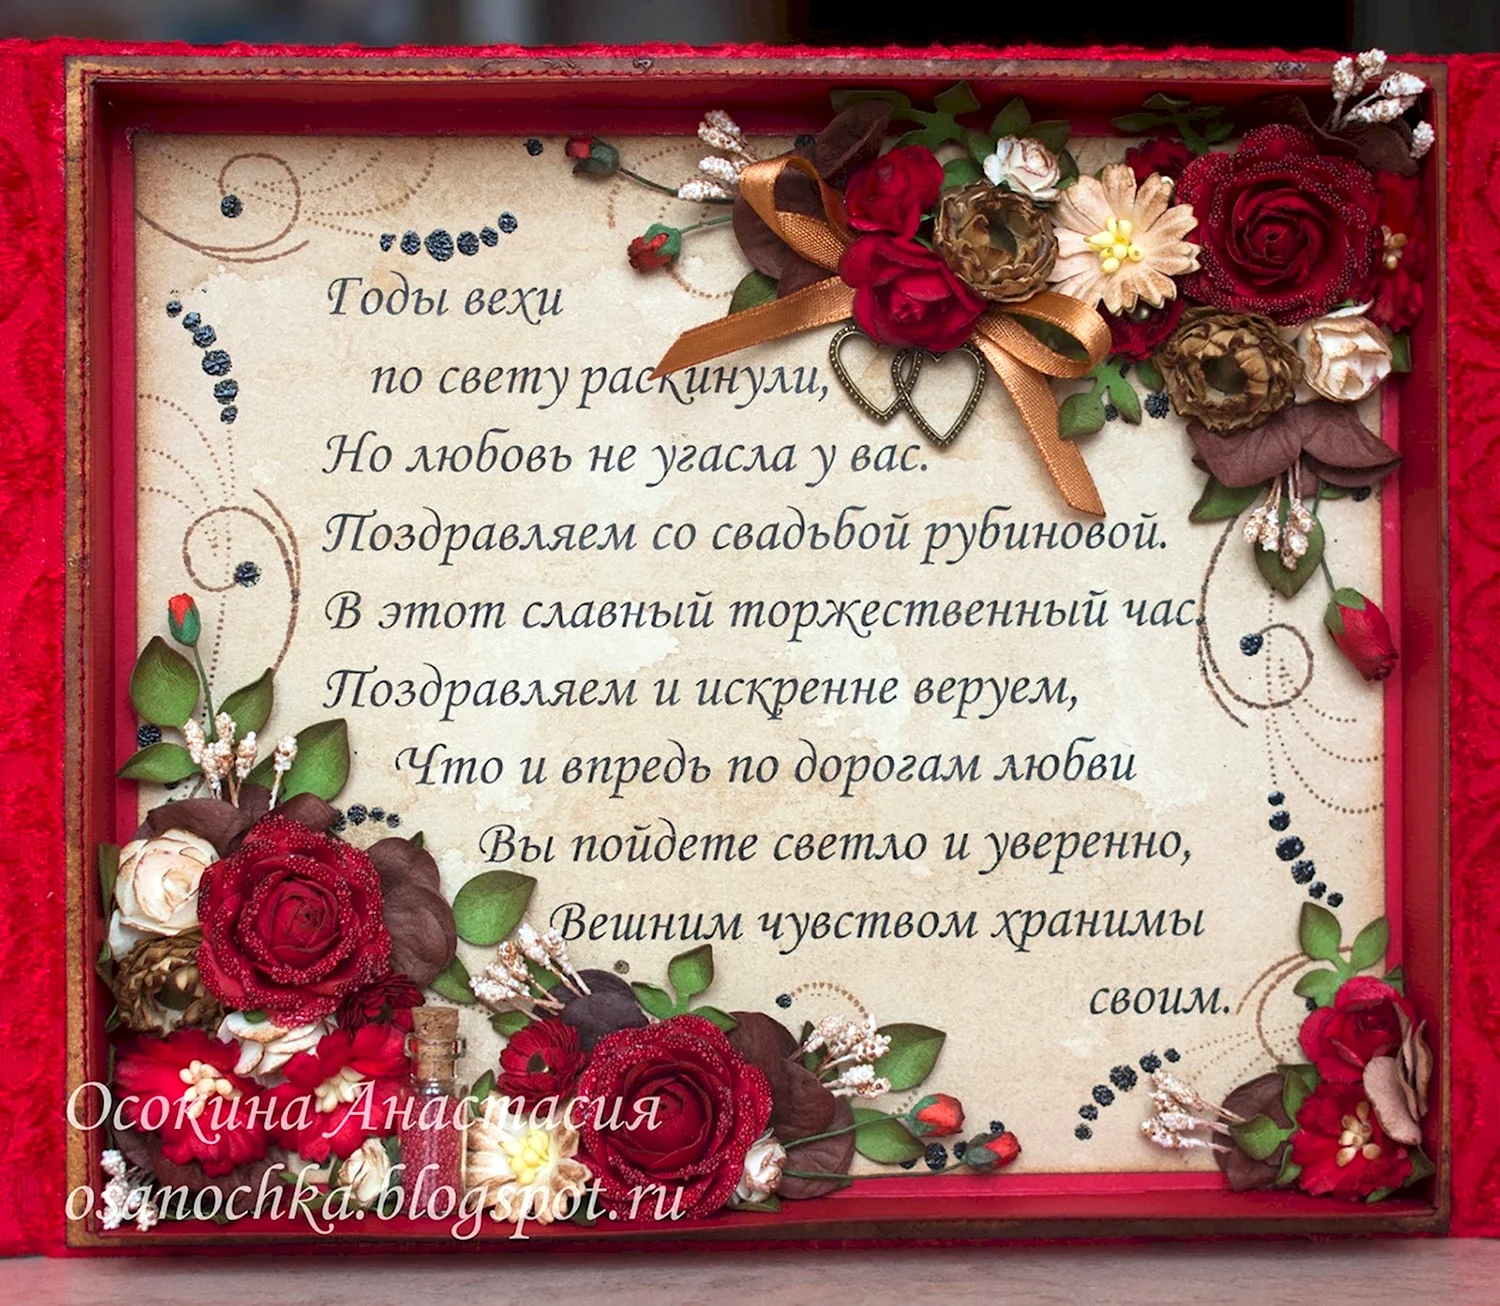 Путин поздравляет с летием брака! (рубиновая) - аудио поздравление на телефон от АудиоПривет